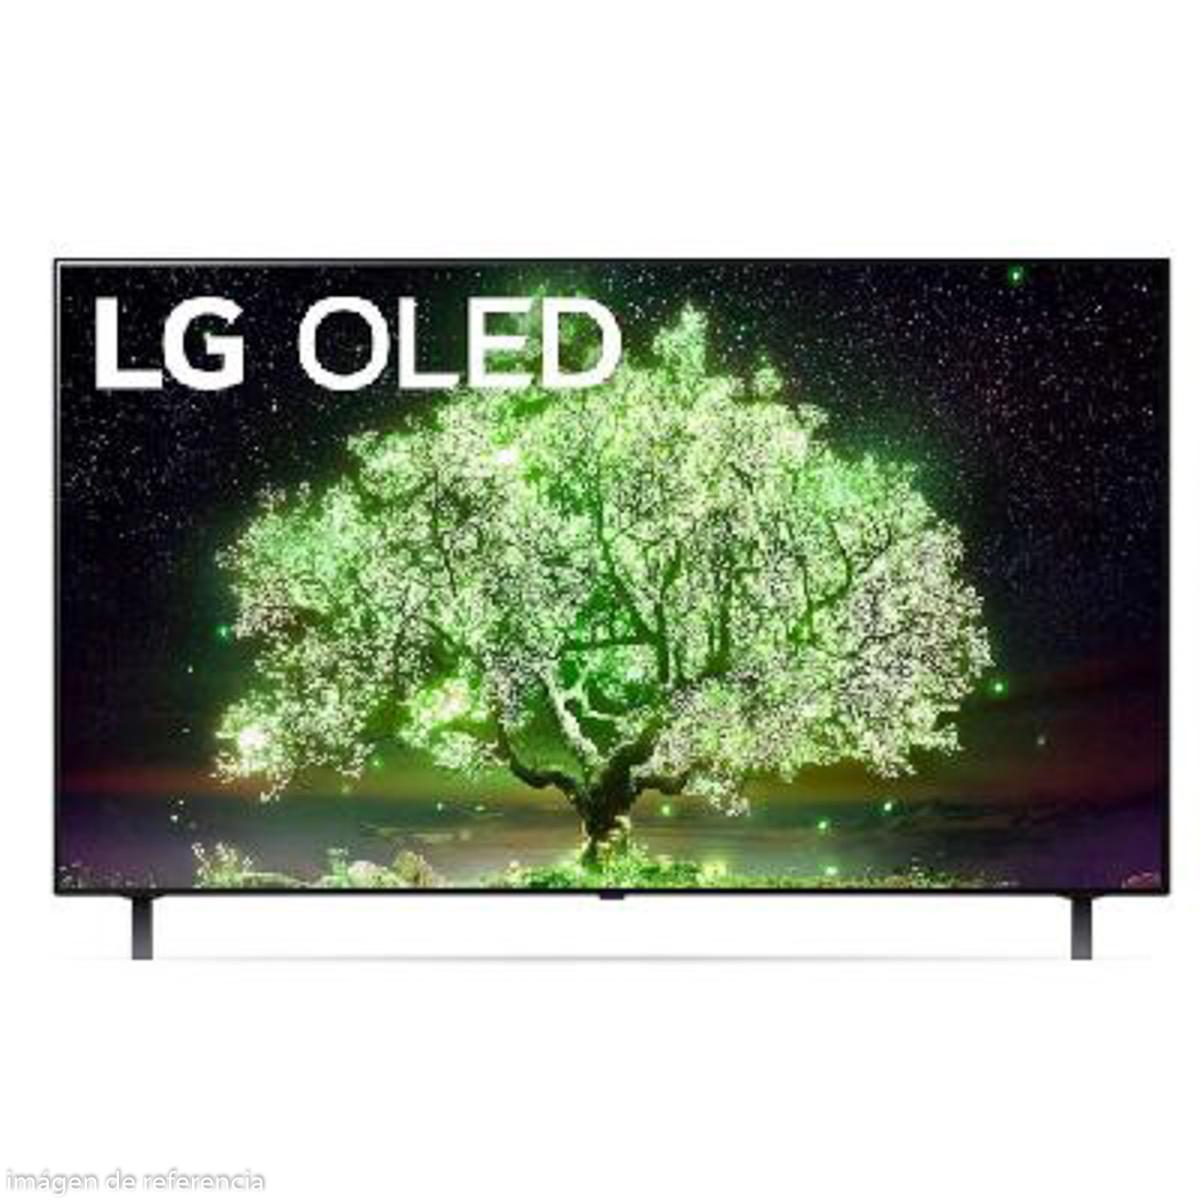 TV LG OLED 48" SMART AI THINQ 4K